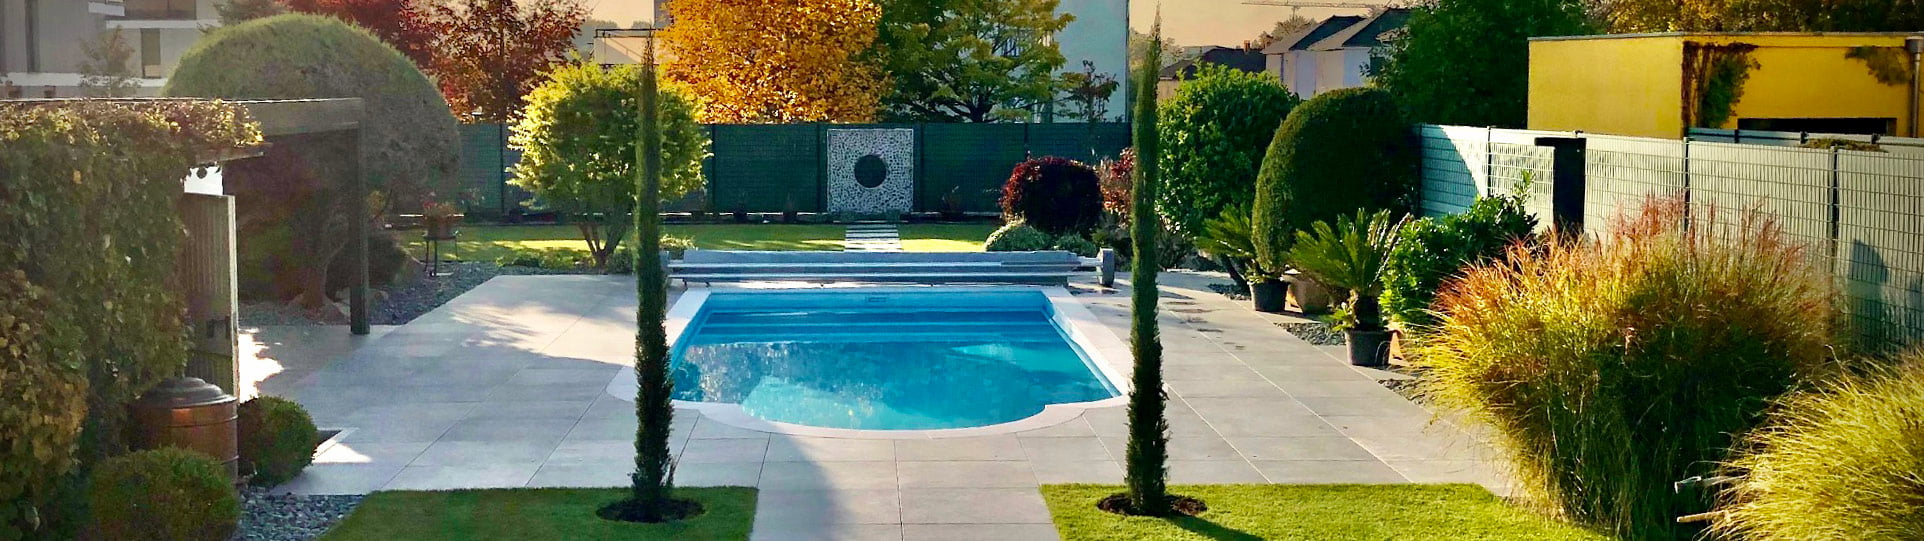 Rénovation de jardin et piscine réalisée par Paysages Hartmann